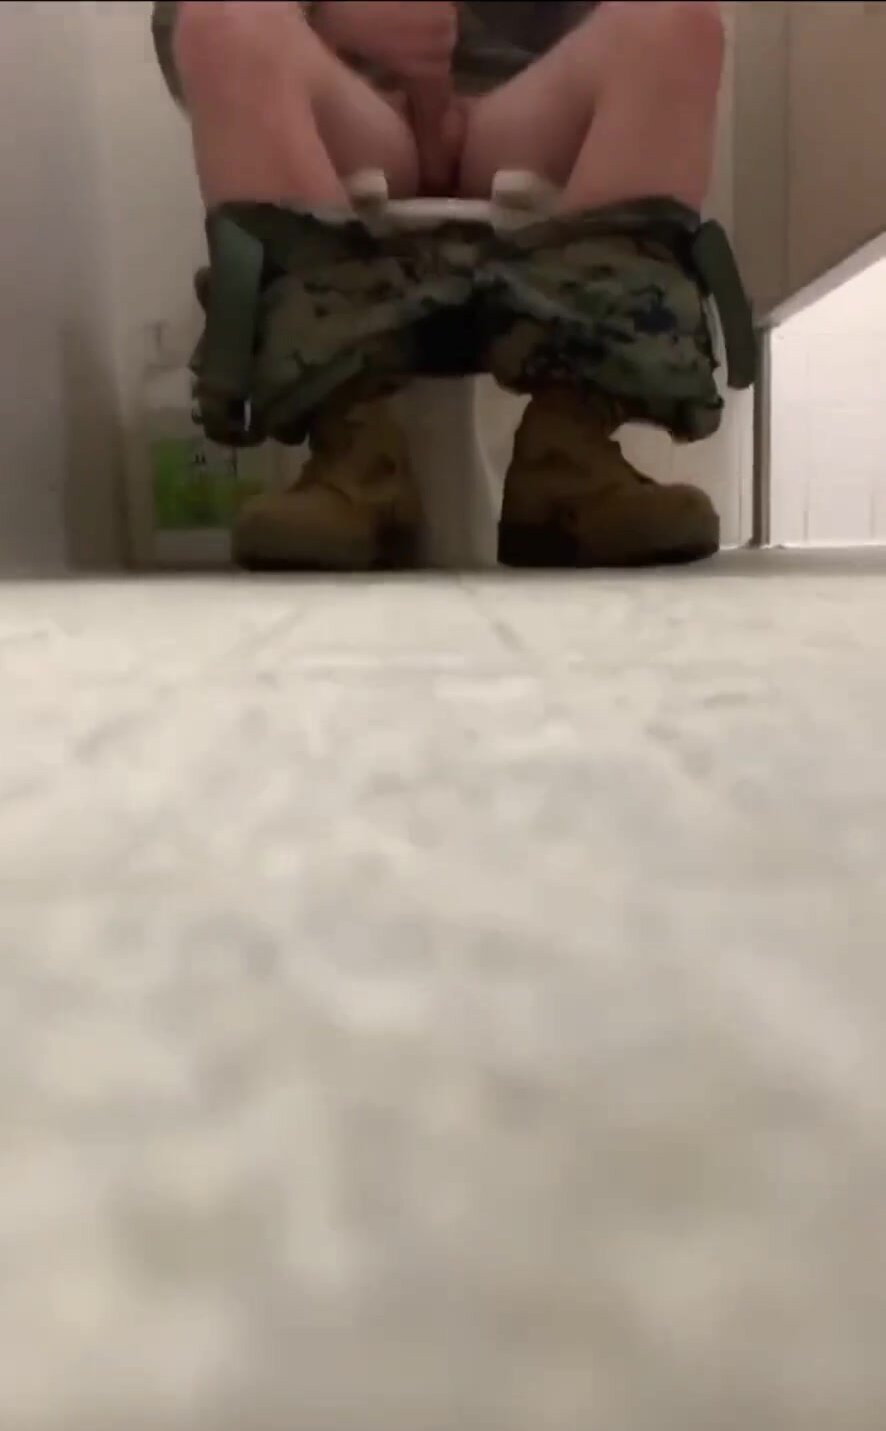 Marine Caught Jerking on the Toilet